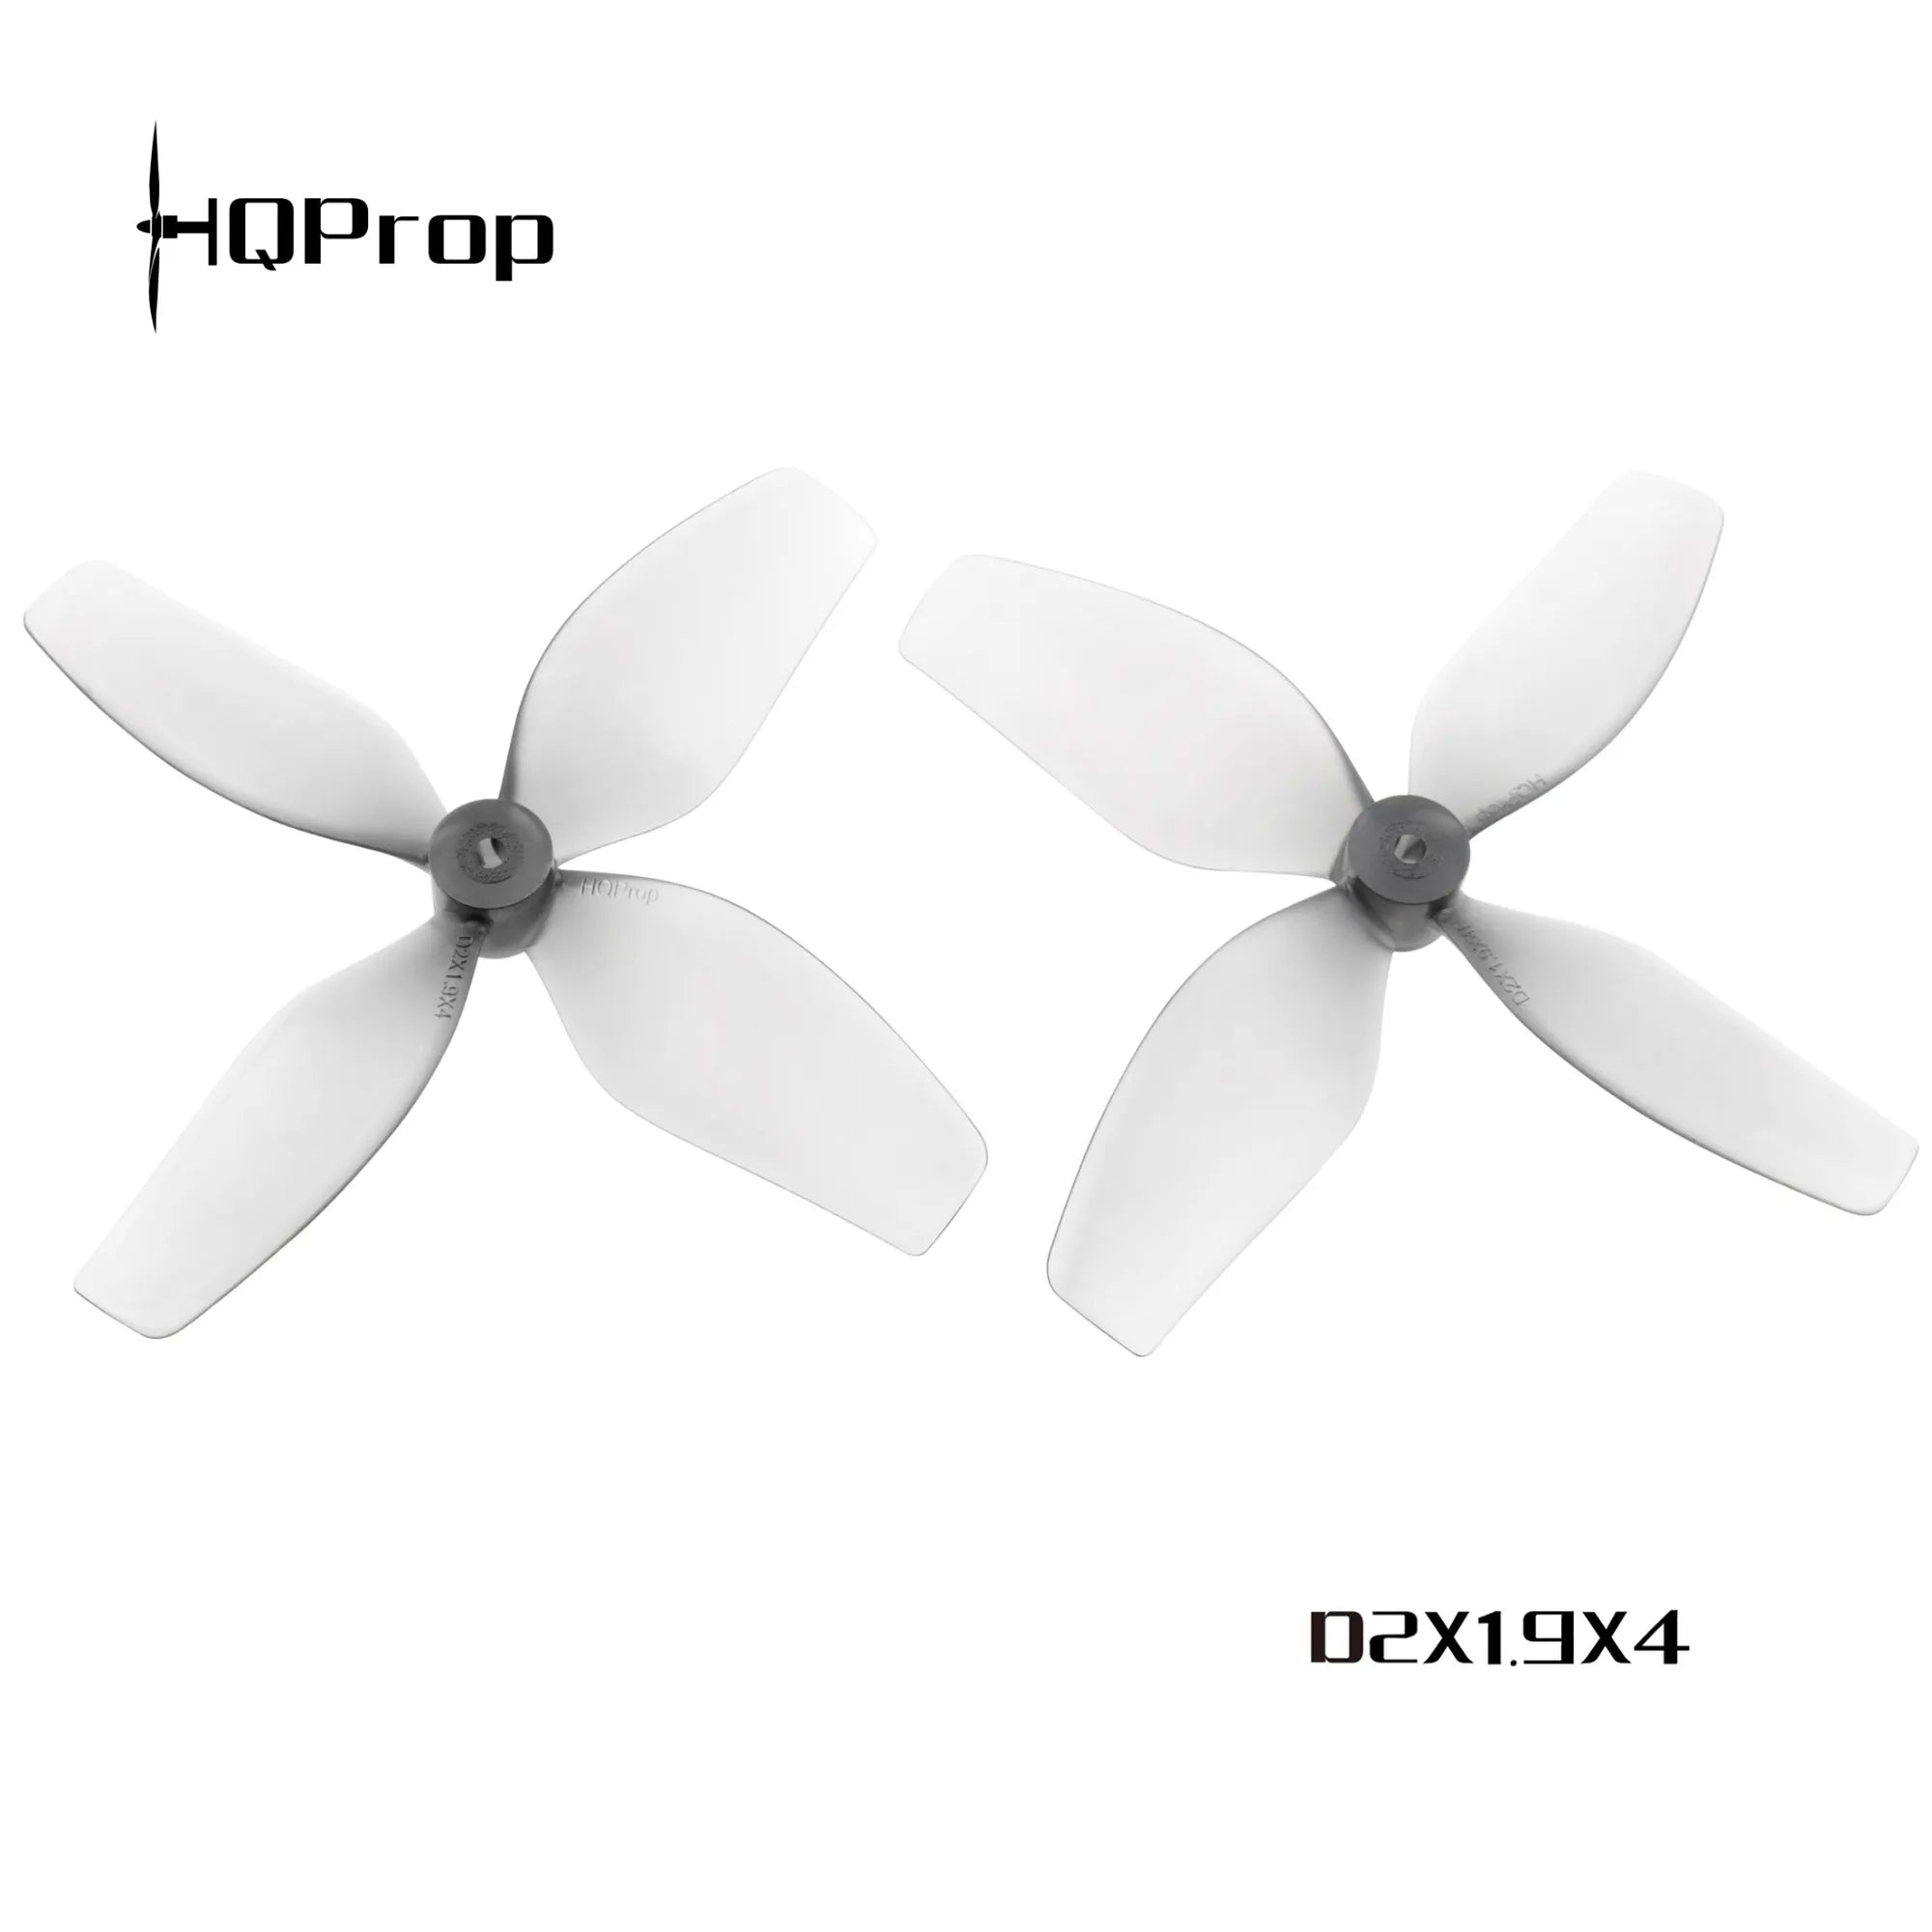 HQProp D2X1.9X4 - DroneDynamics.ca